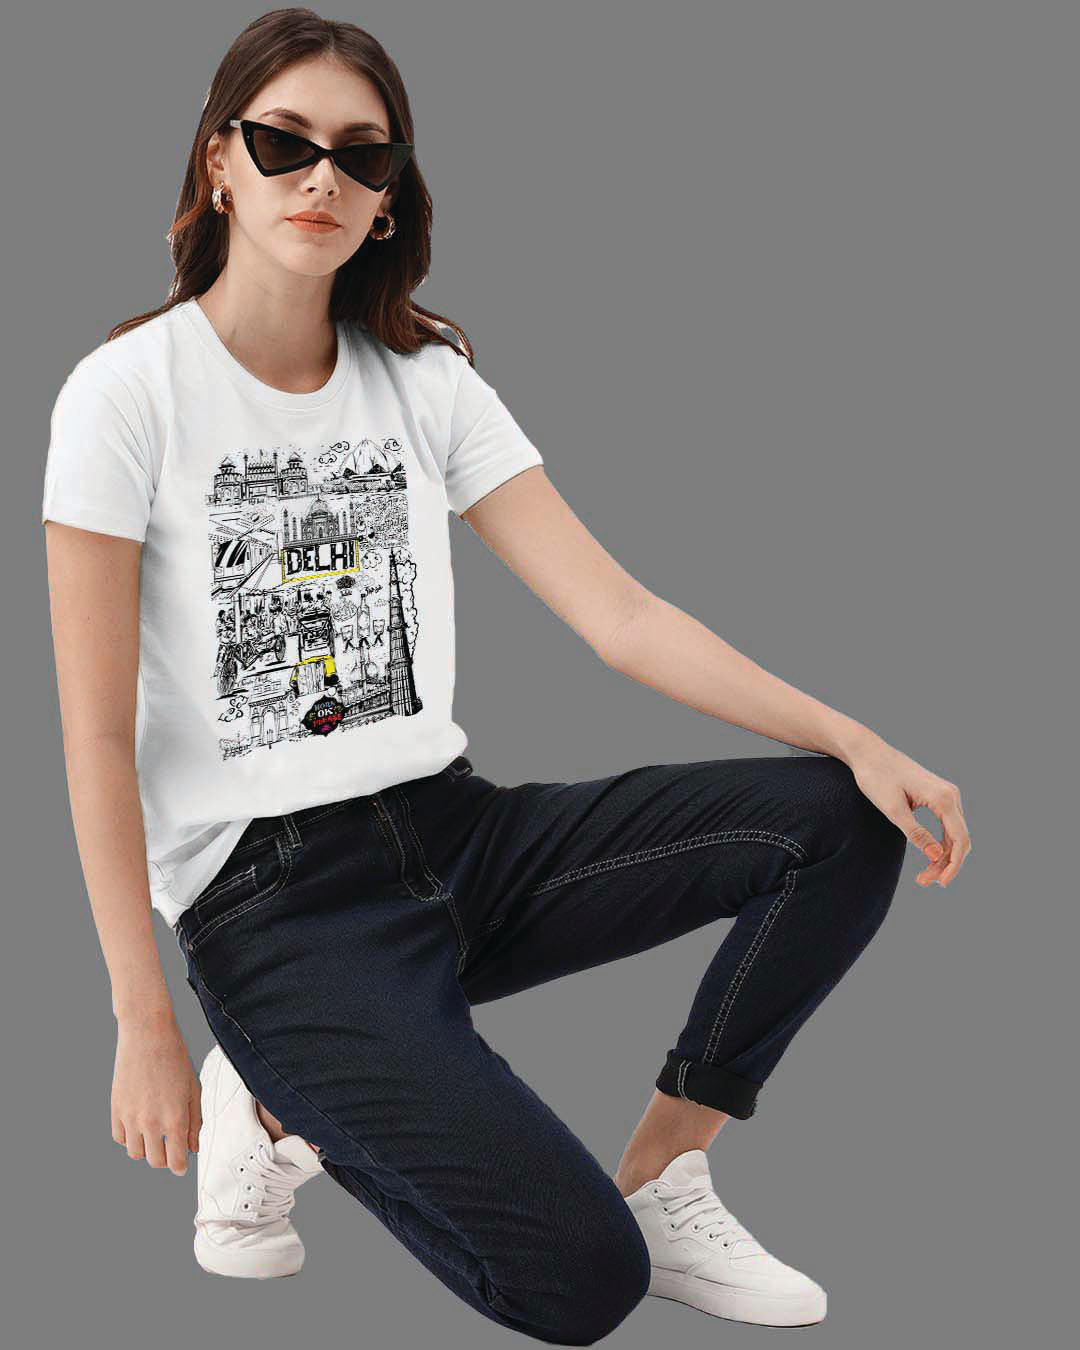 Shop Women's Delhi Travel Doodle Premium Cotton T-shirt